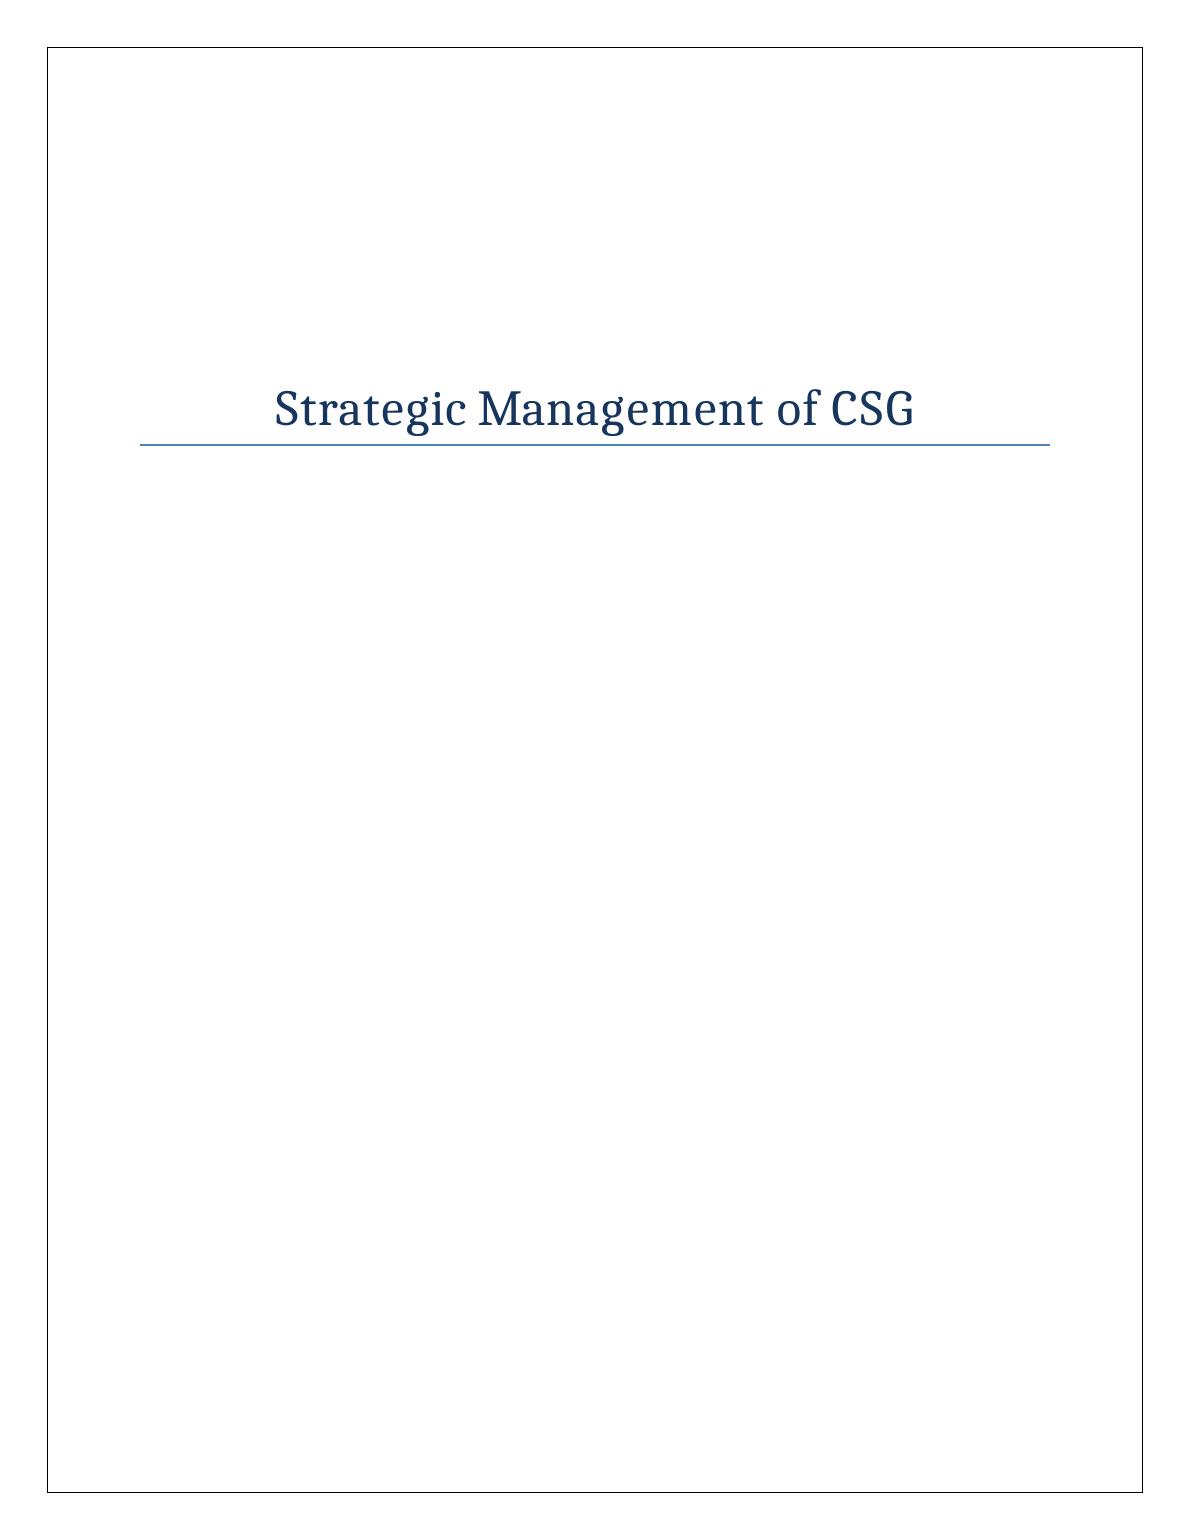 Strategic Management of CSG_1